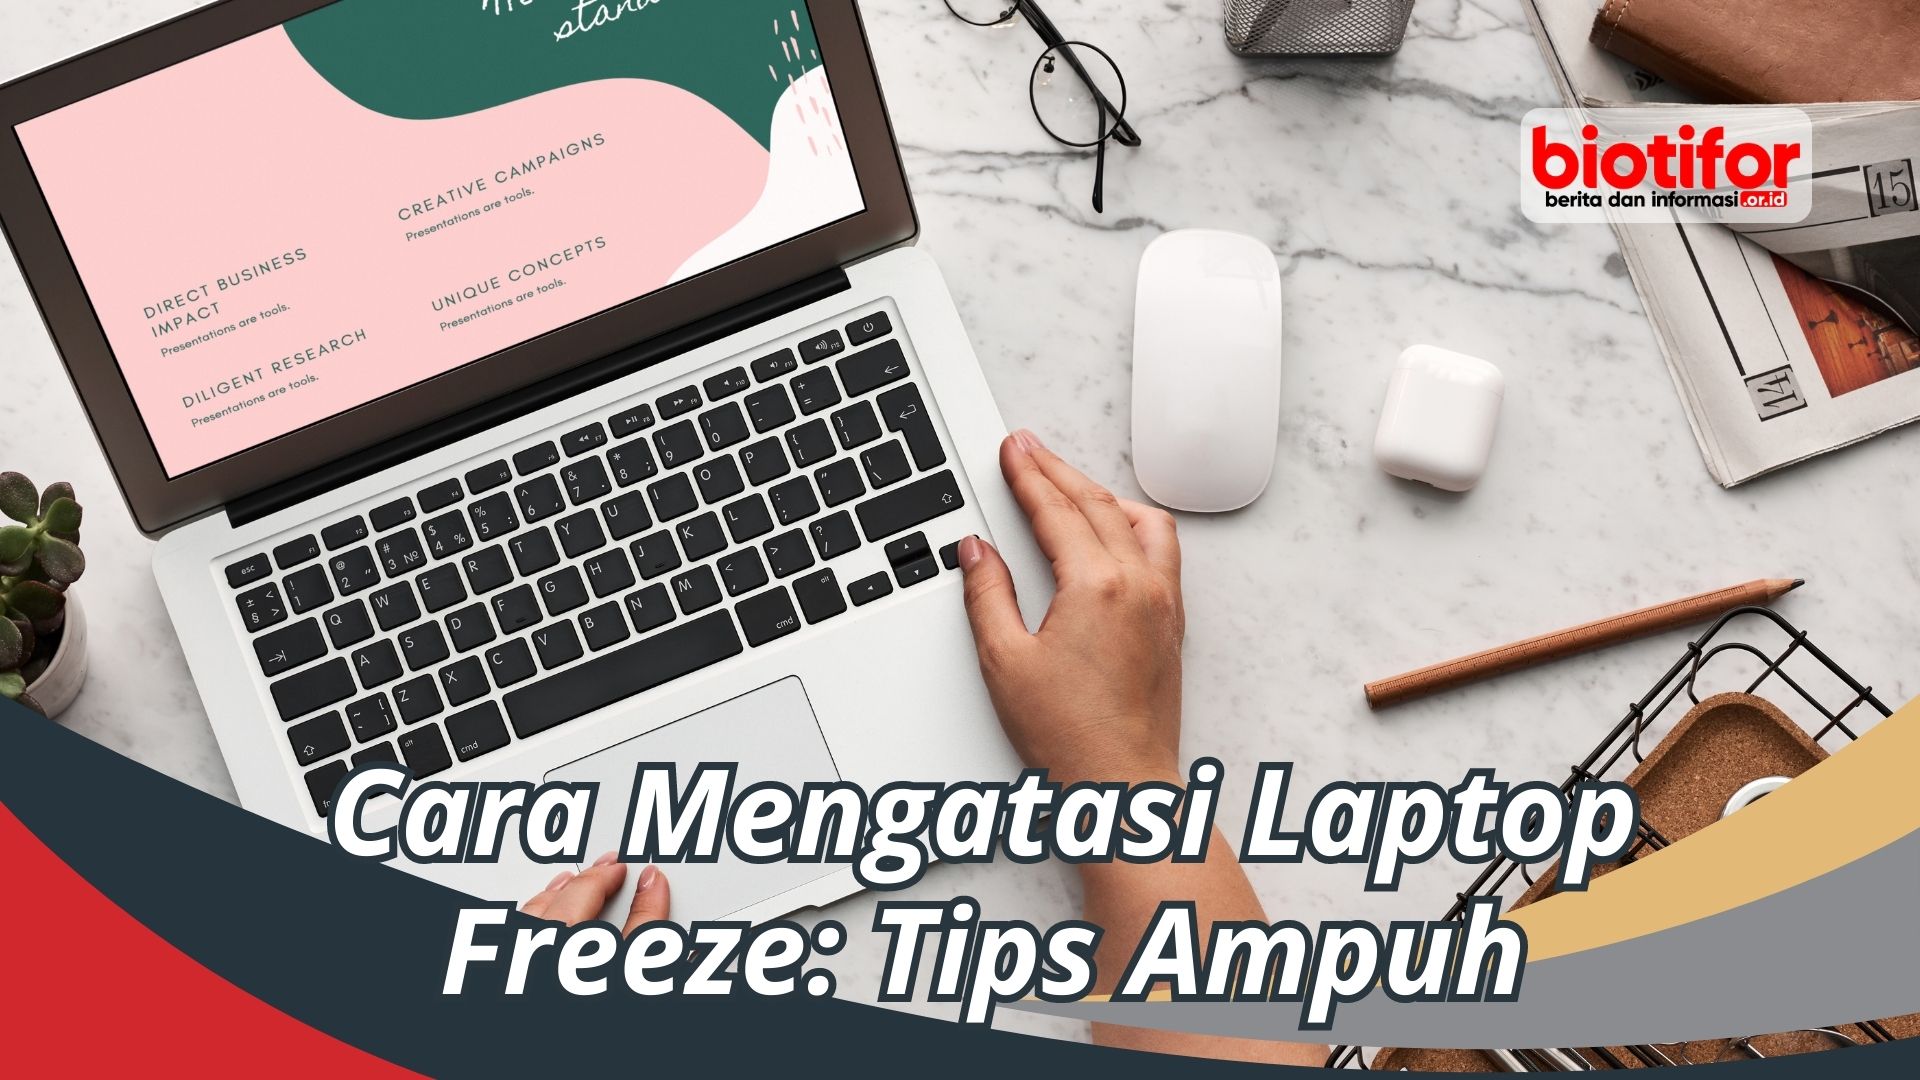 Cara Mengatasi Laptop Freeze: Tips Ampuh